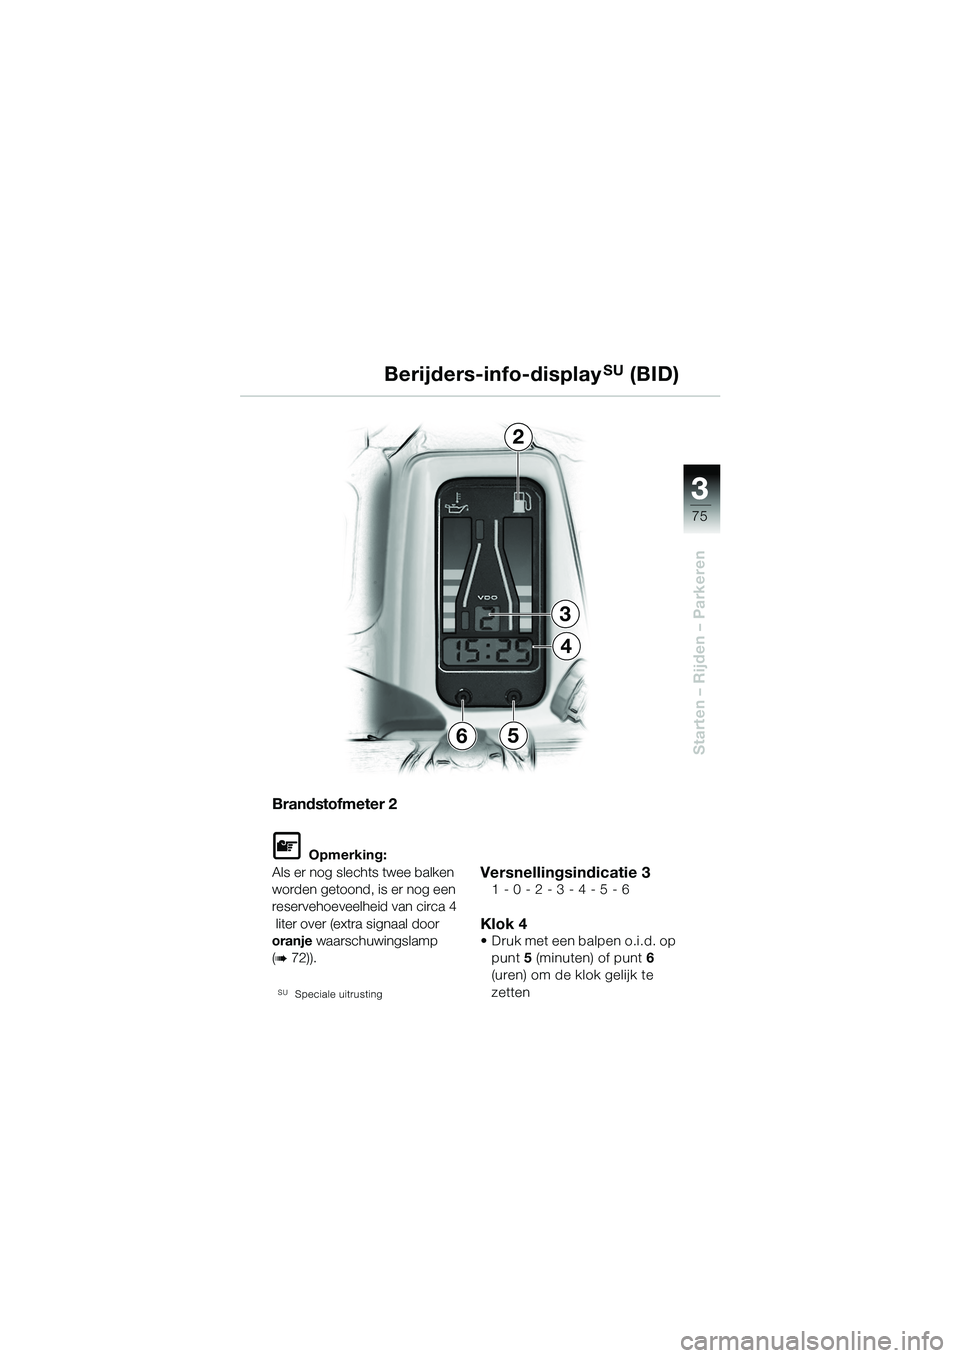 BMW MOTORRAD R 1150 GS 2002  Handleiding (in Dutch) 3 3
75
Starten – Rijden – Parkeren
2
3
4
65 Berijders-info-display
SU (BID)
Brandstofmeter 2
L Opmerking:
Als er nog slechts twee balken 
worden getoond, is er nog een 
reservehoeveelheid van circ